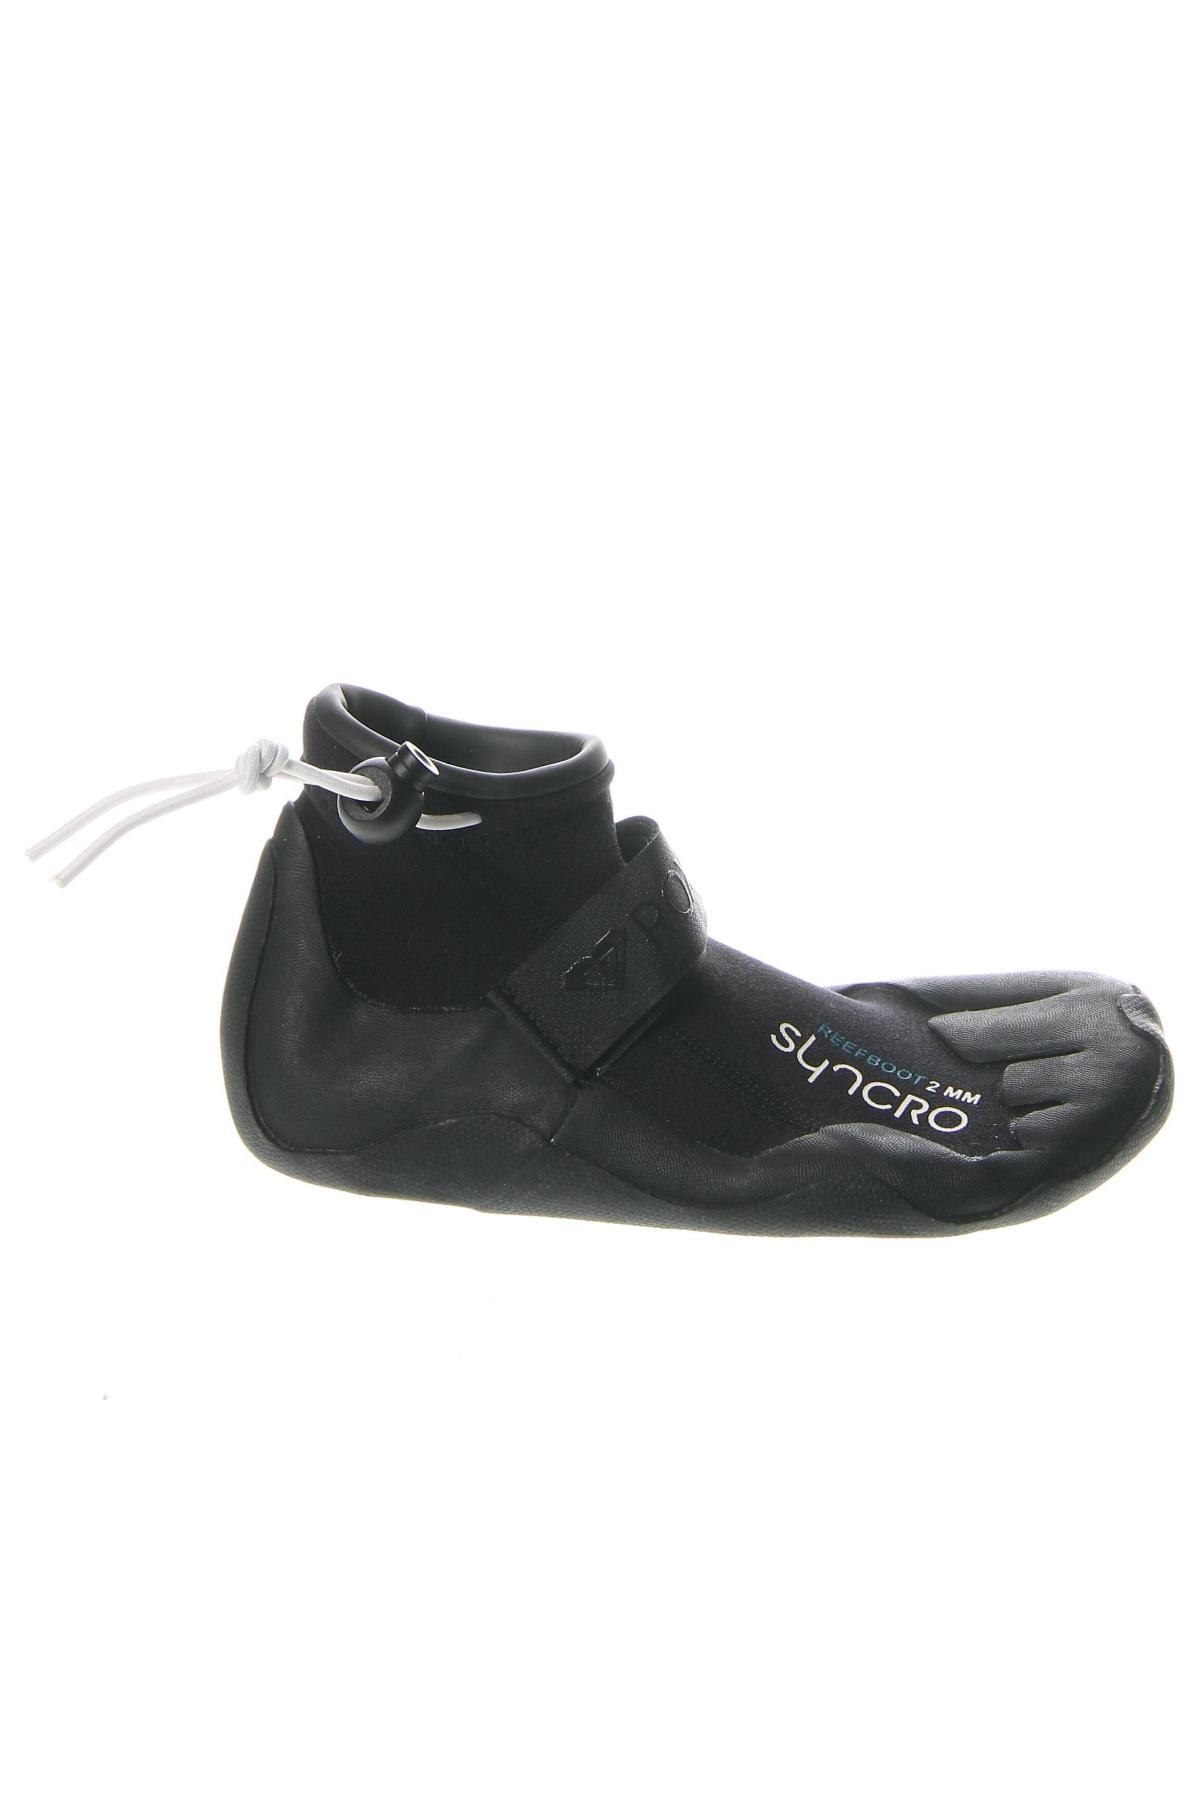 Παπούτσια Roxy, Μέγεθος 35, Χρώμα Μαύρο, Τιμή 37,44 €